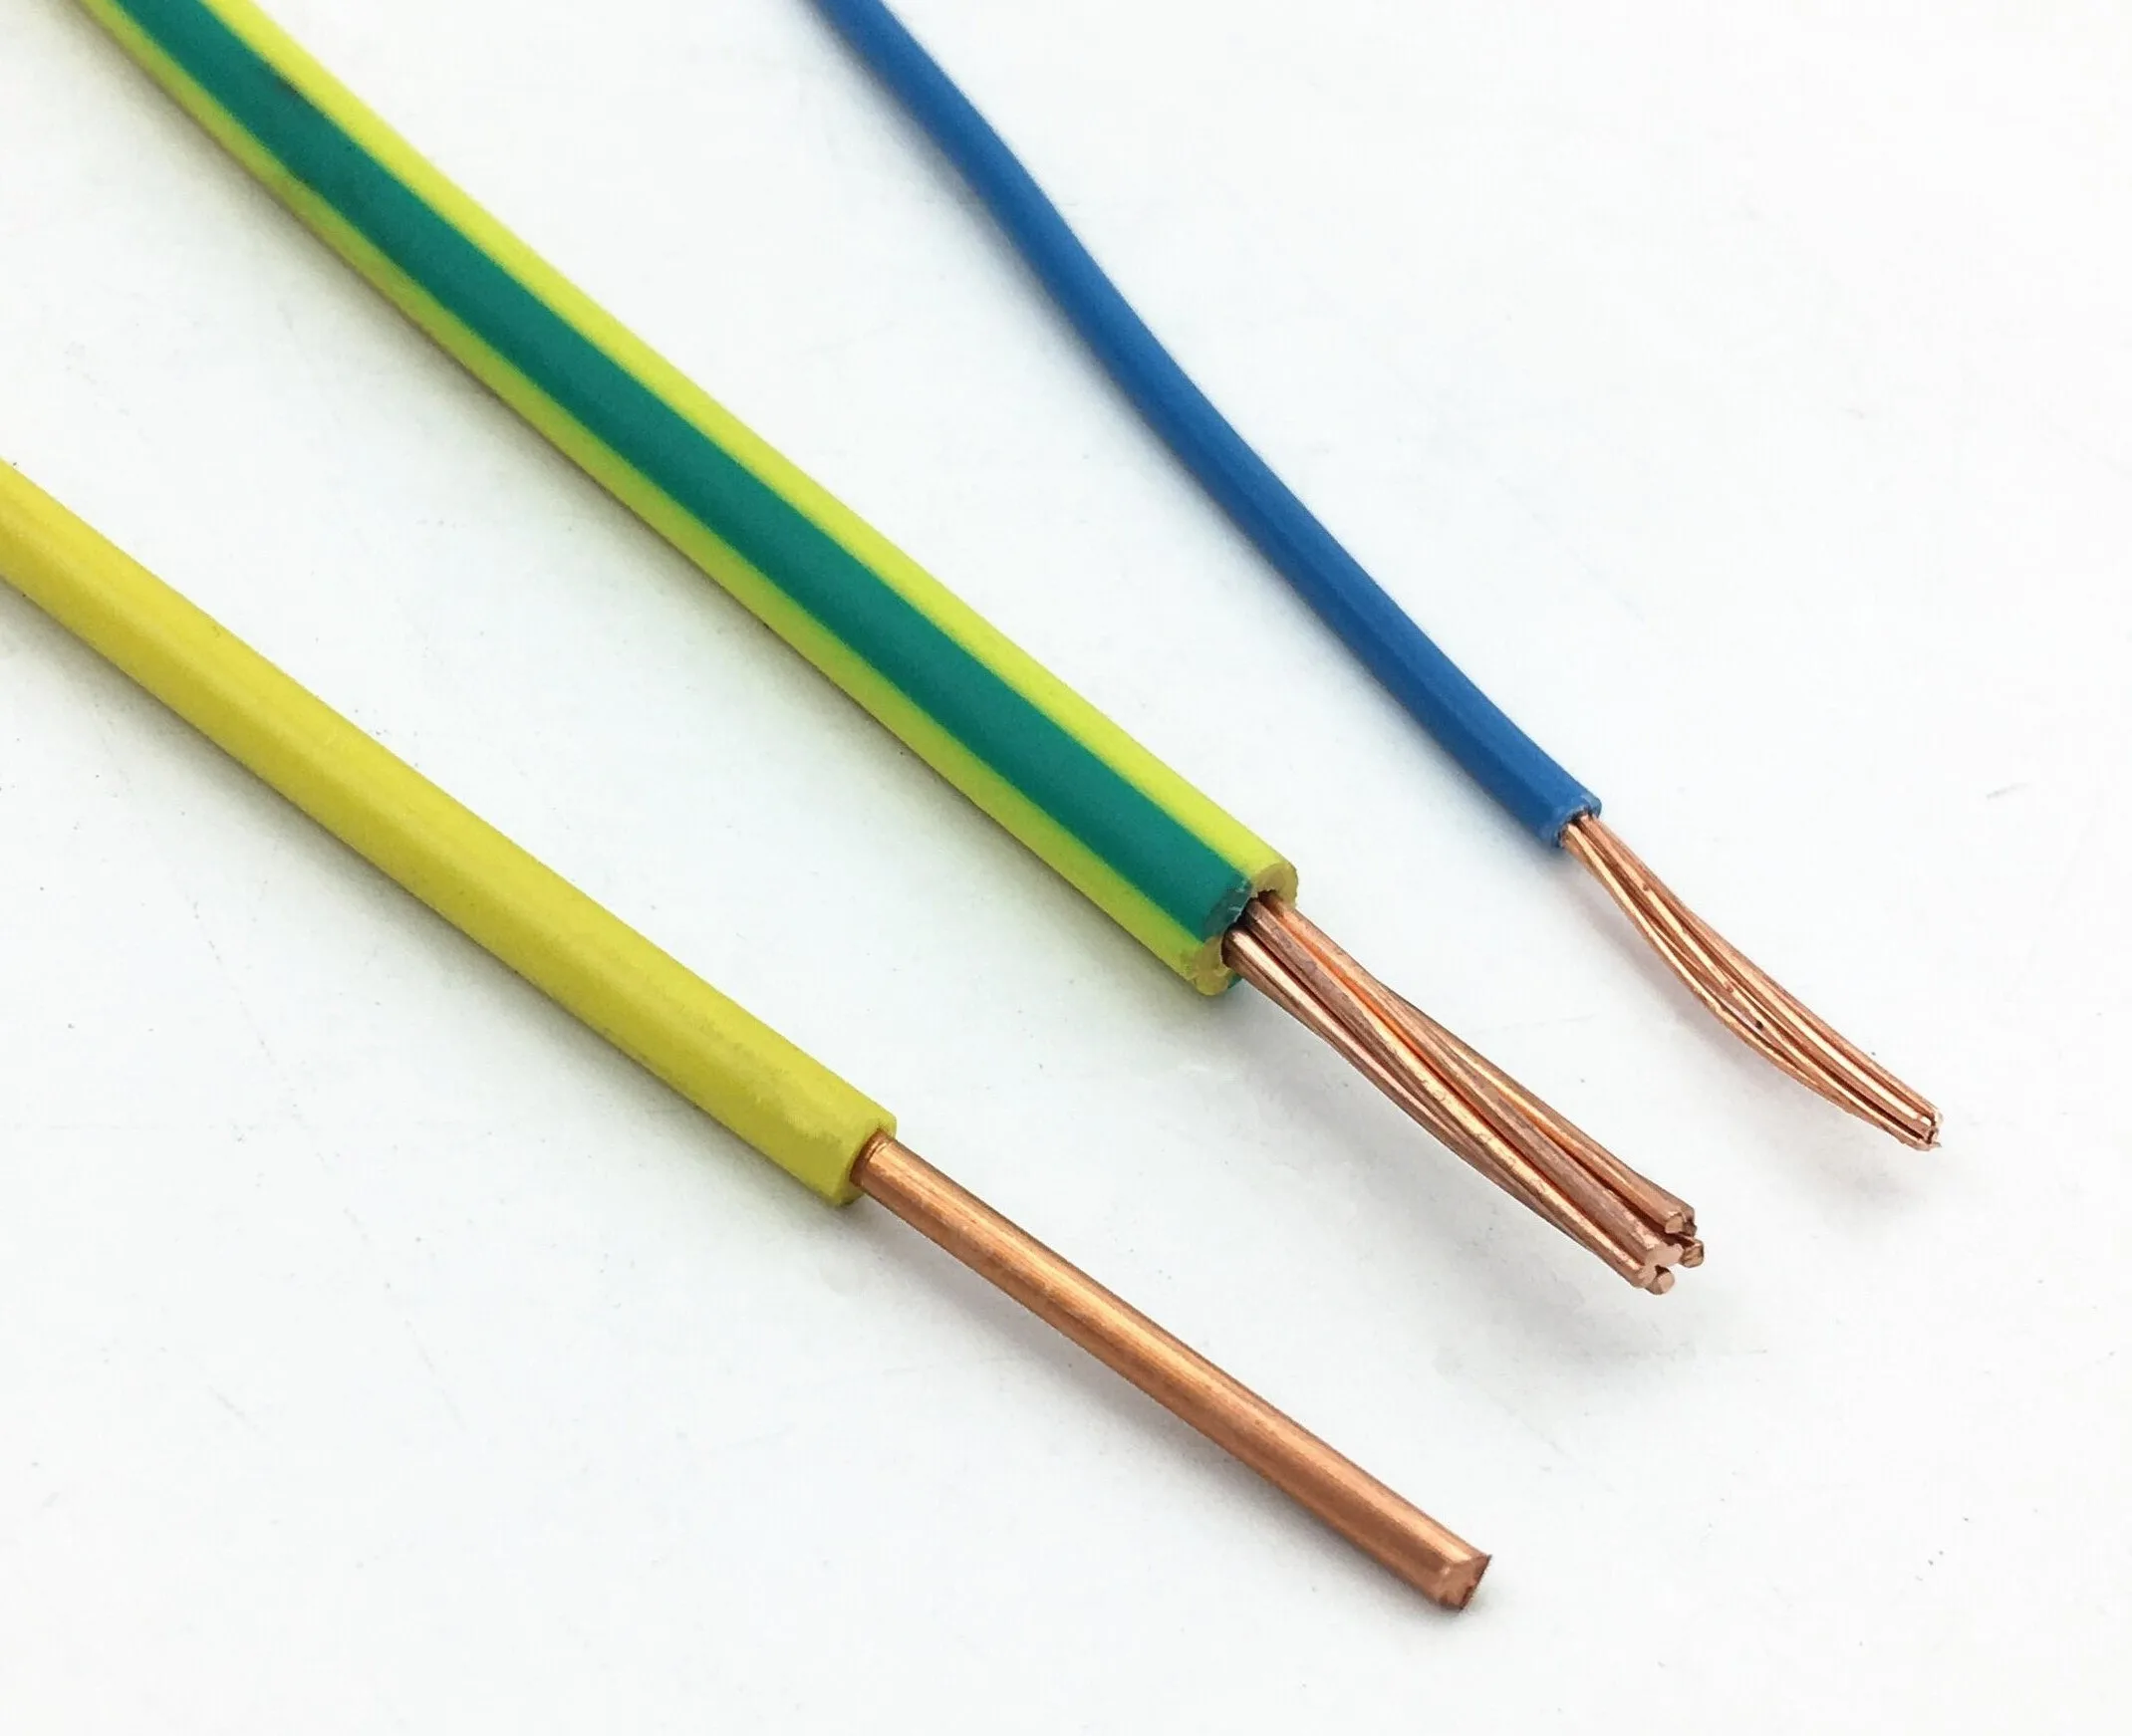 Кабель 1 5 8. Провод многожильный медный 1.5. 3x4+1x2.5 Cable wire. Провода электрические многожильные 2х2,5 (450/750v) ПВХ. Провод заземления 4мм2 желто-зеленый.